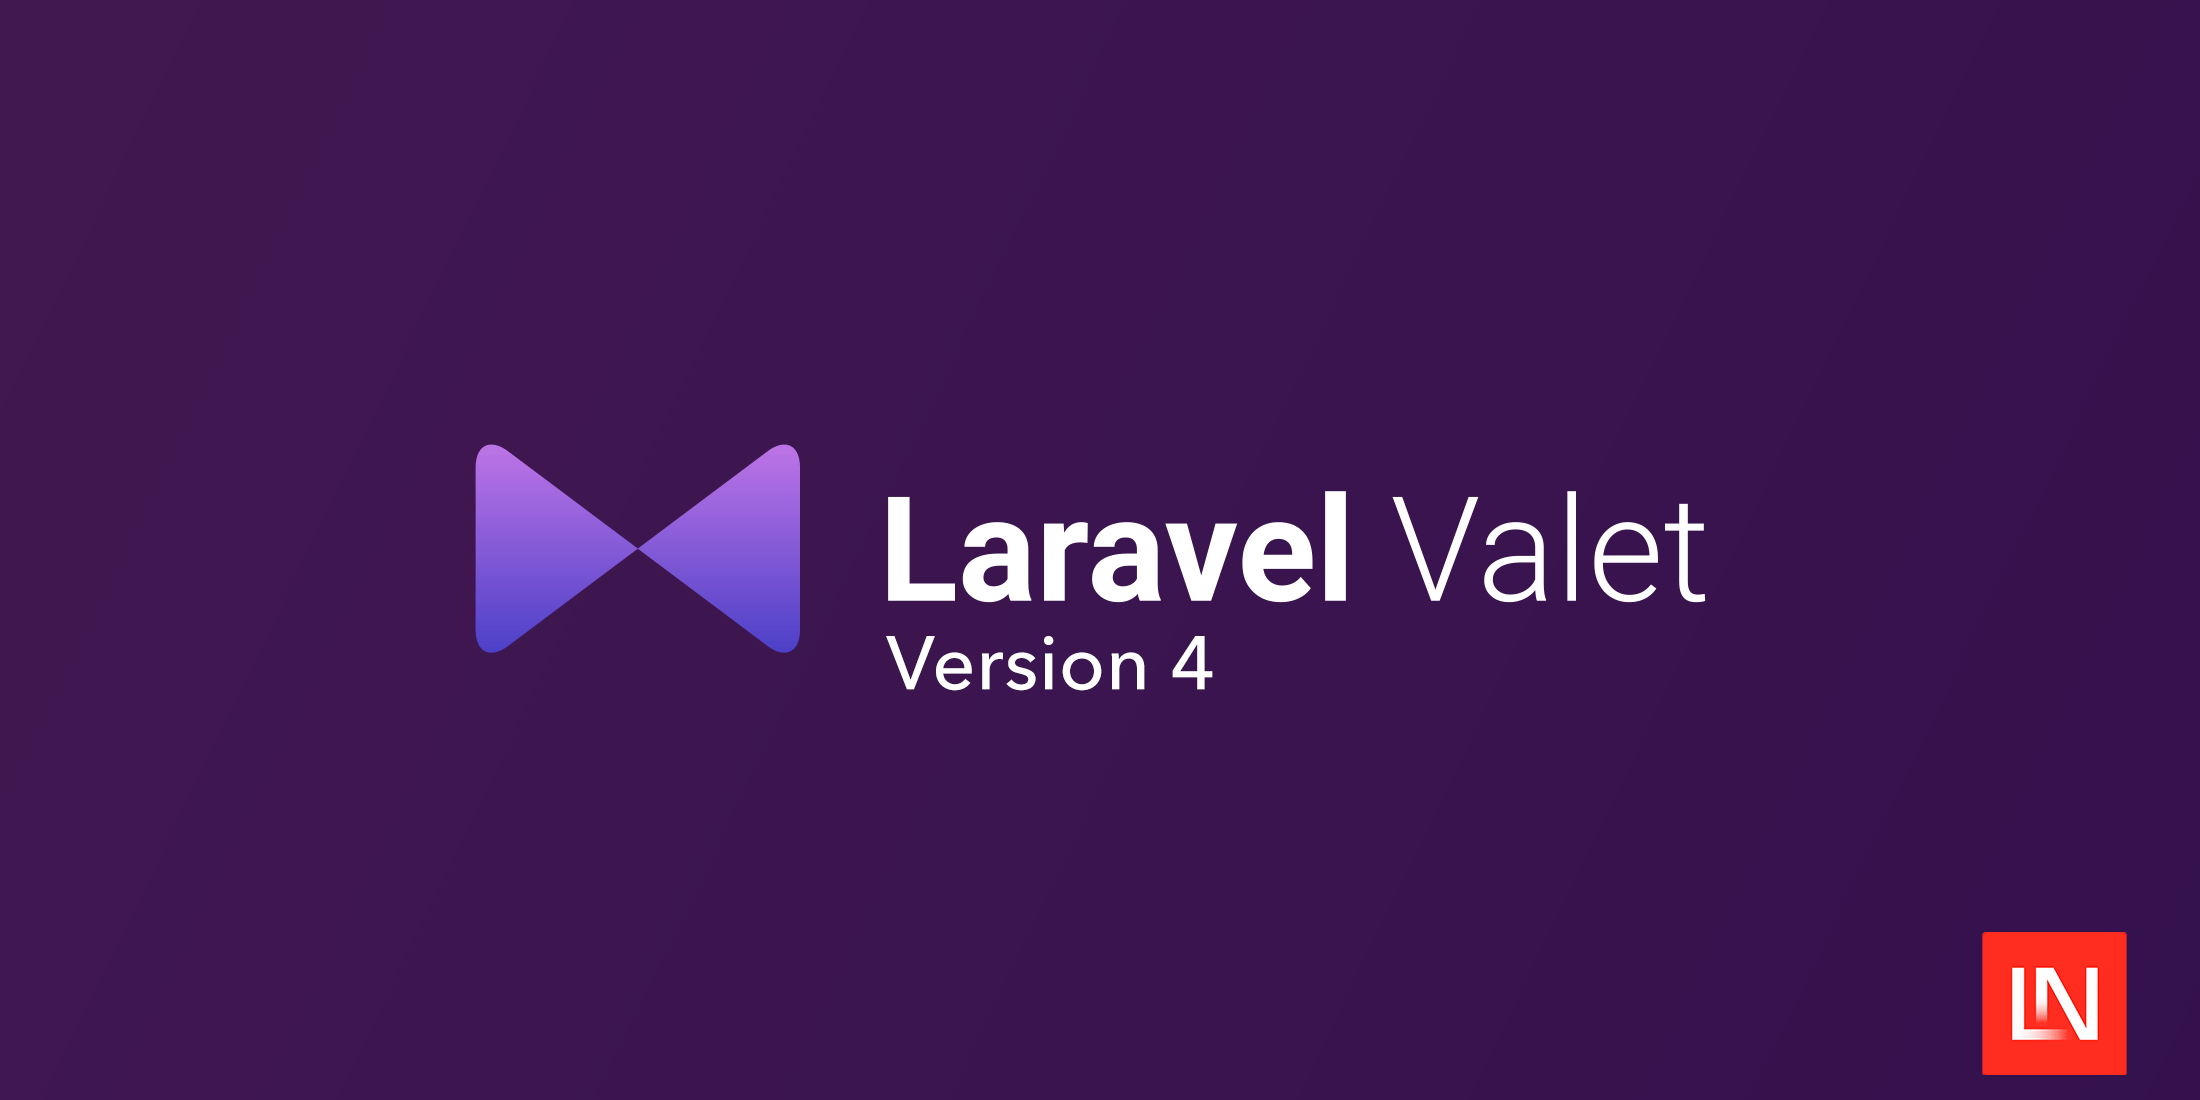 Valet 4.0 випускається